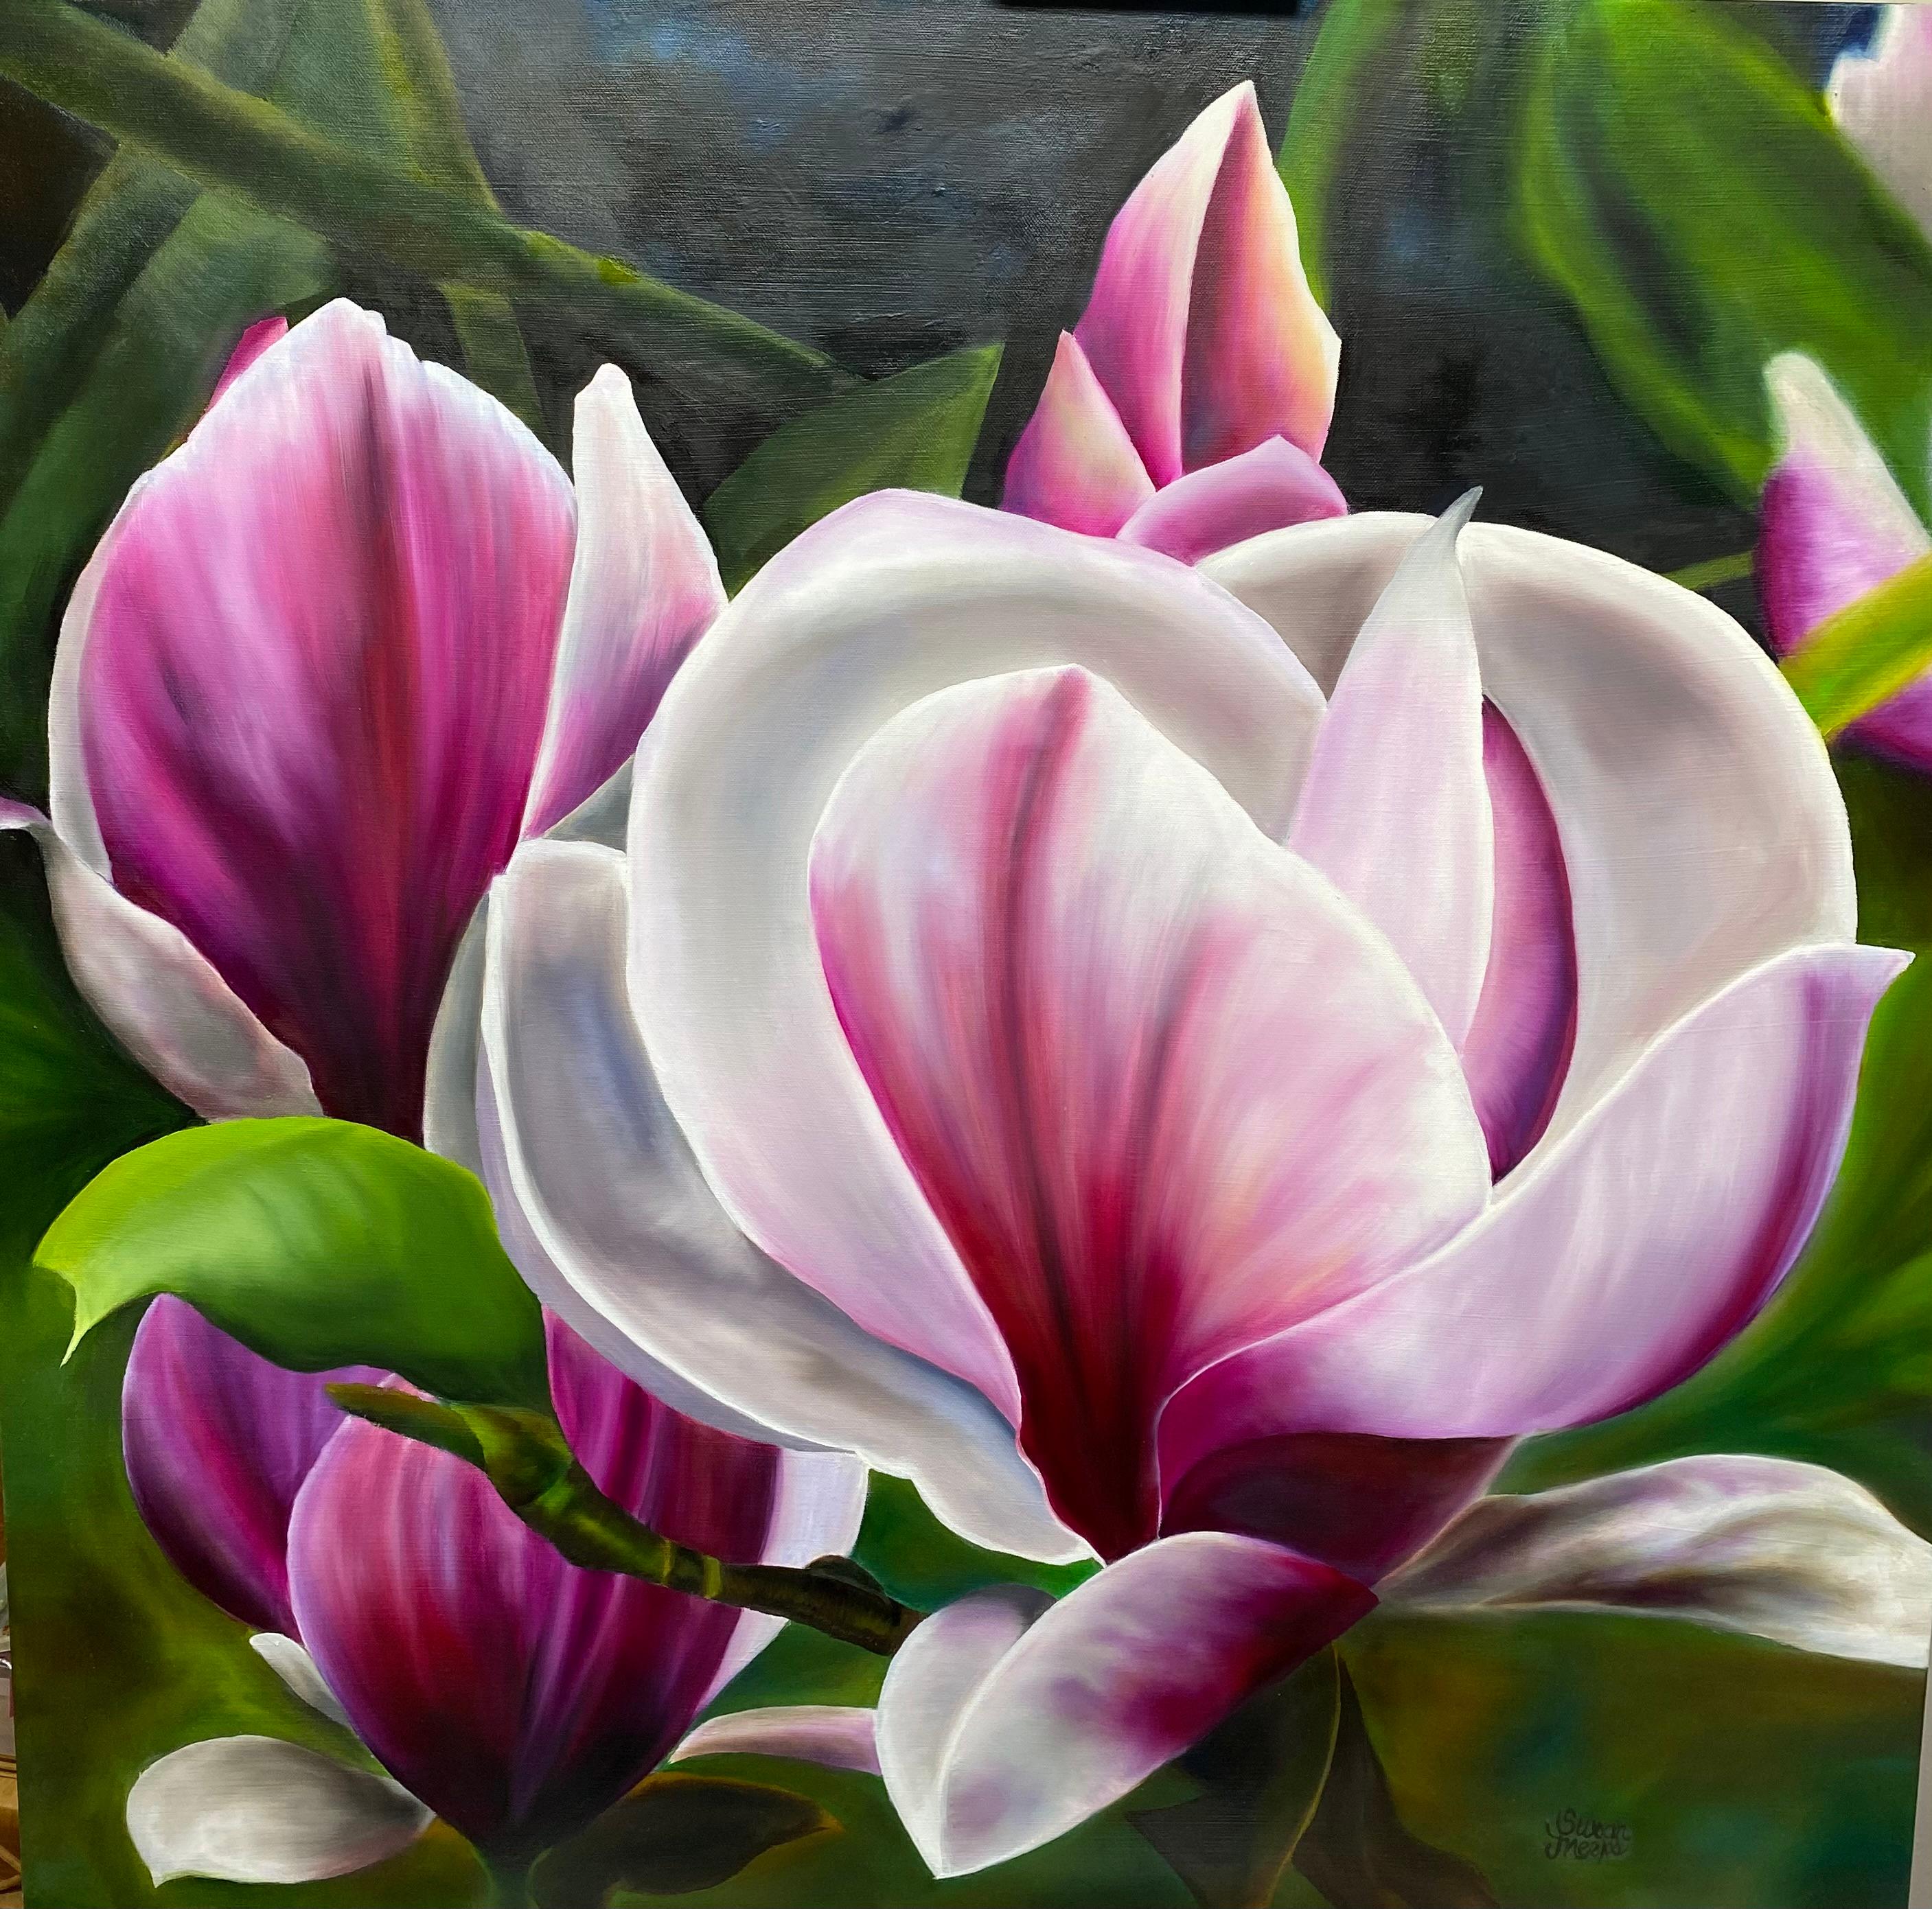 Magenta Magnolia  Réalisme 36 x 36 Huile  Canvas Gallery Wrapped  Peinture florale 